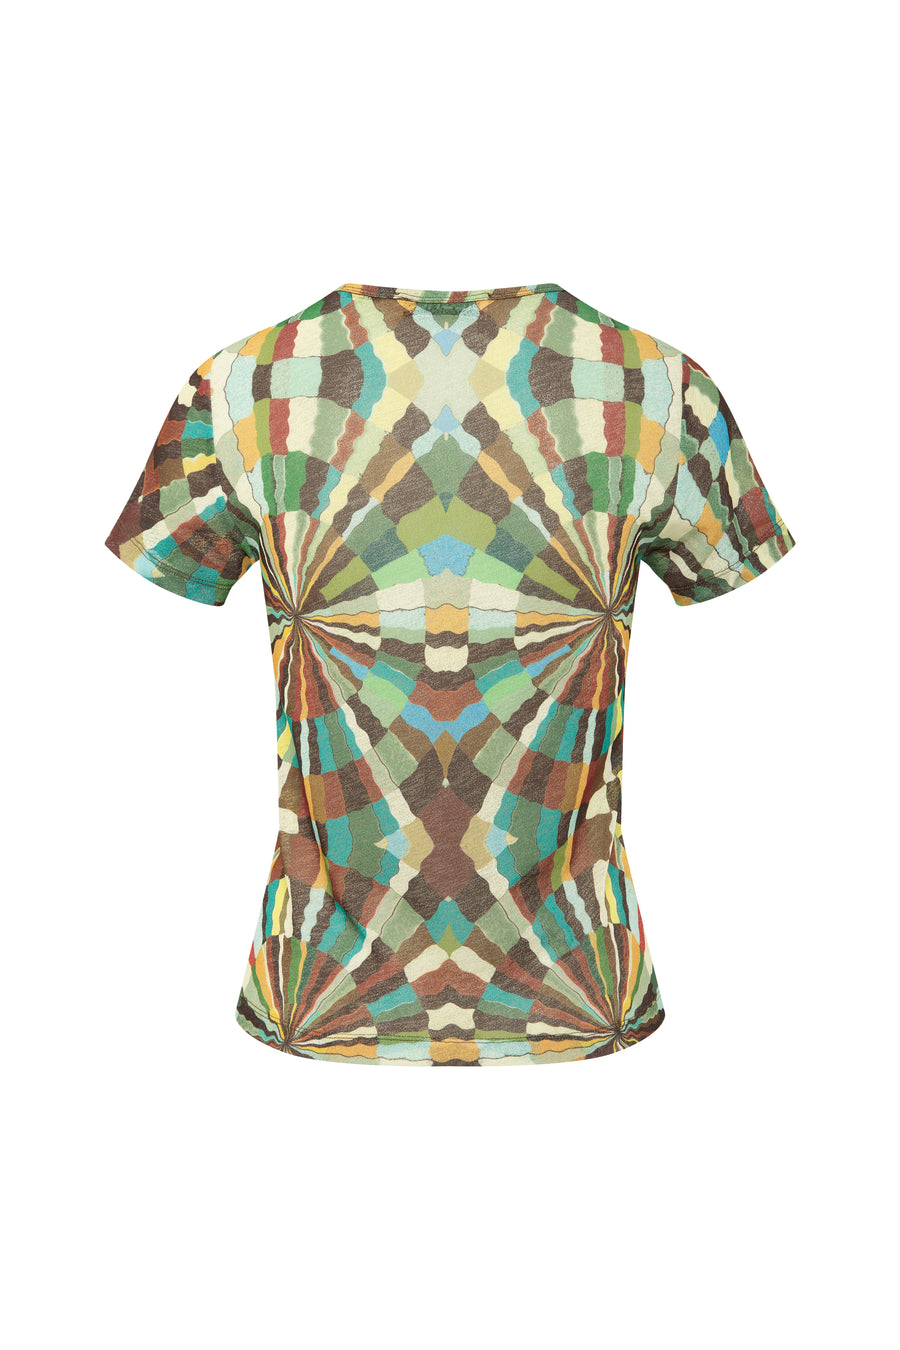 TISO - Kaleidoscope printed textured t-shirt